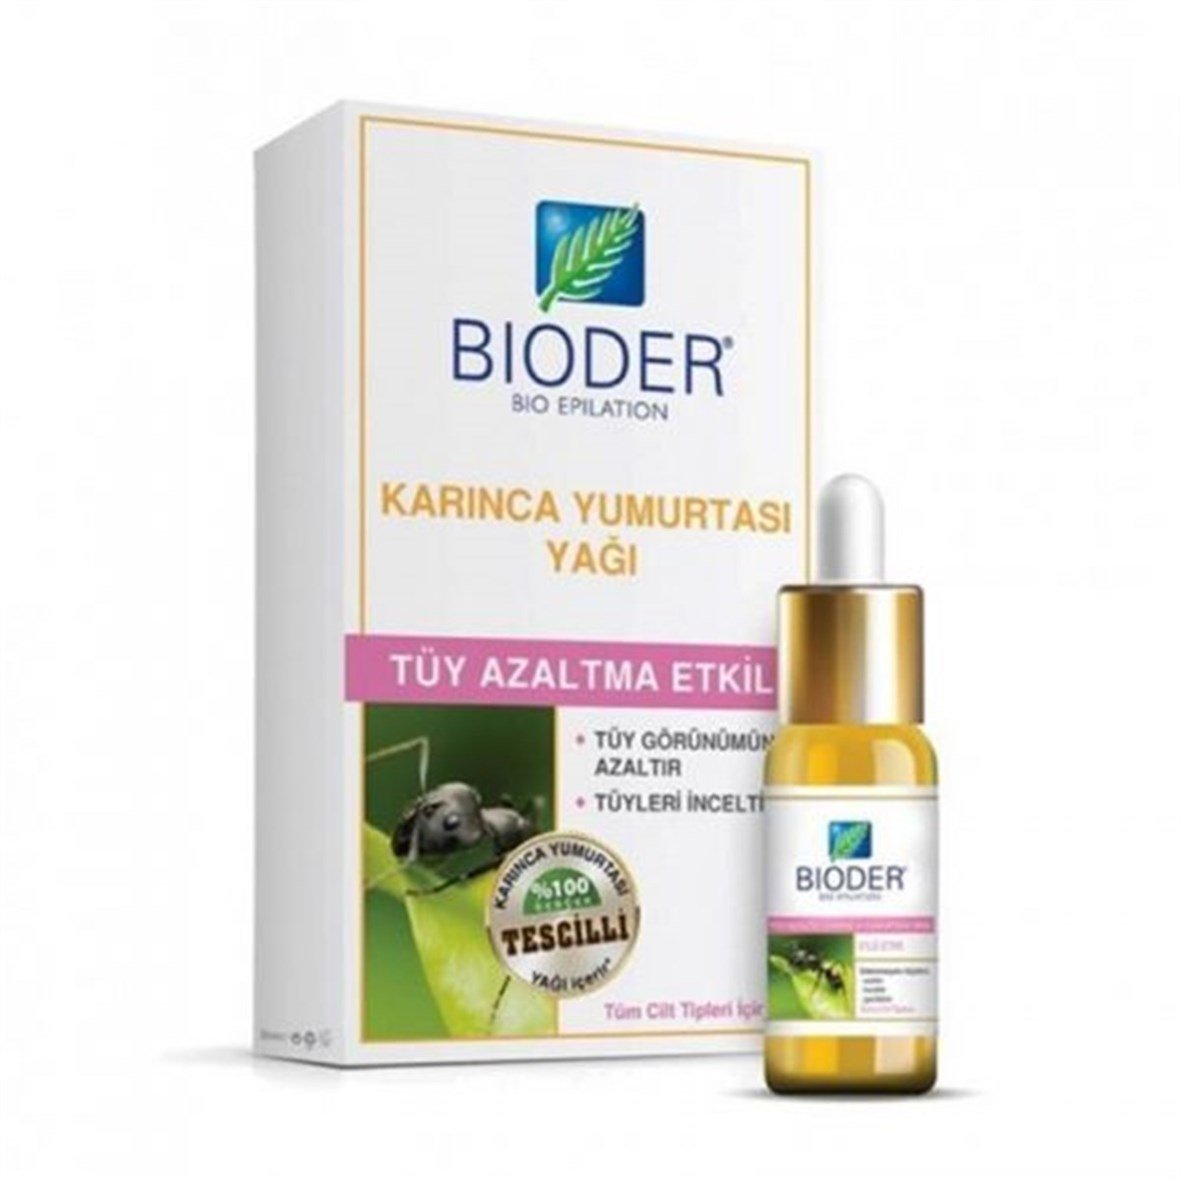 Bioder Bio Epilation Tüy Azaltıcı Karınca Yumurtası Yağı 30 ml  Eczasepeti.com'da En Uygun Fiyatlar ve Yorumlar